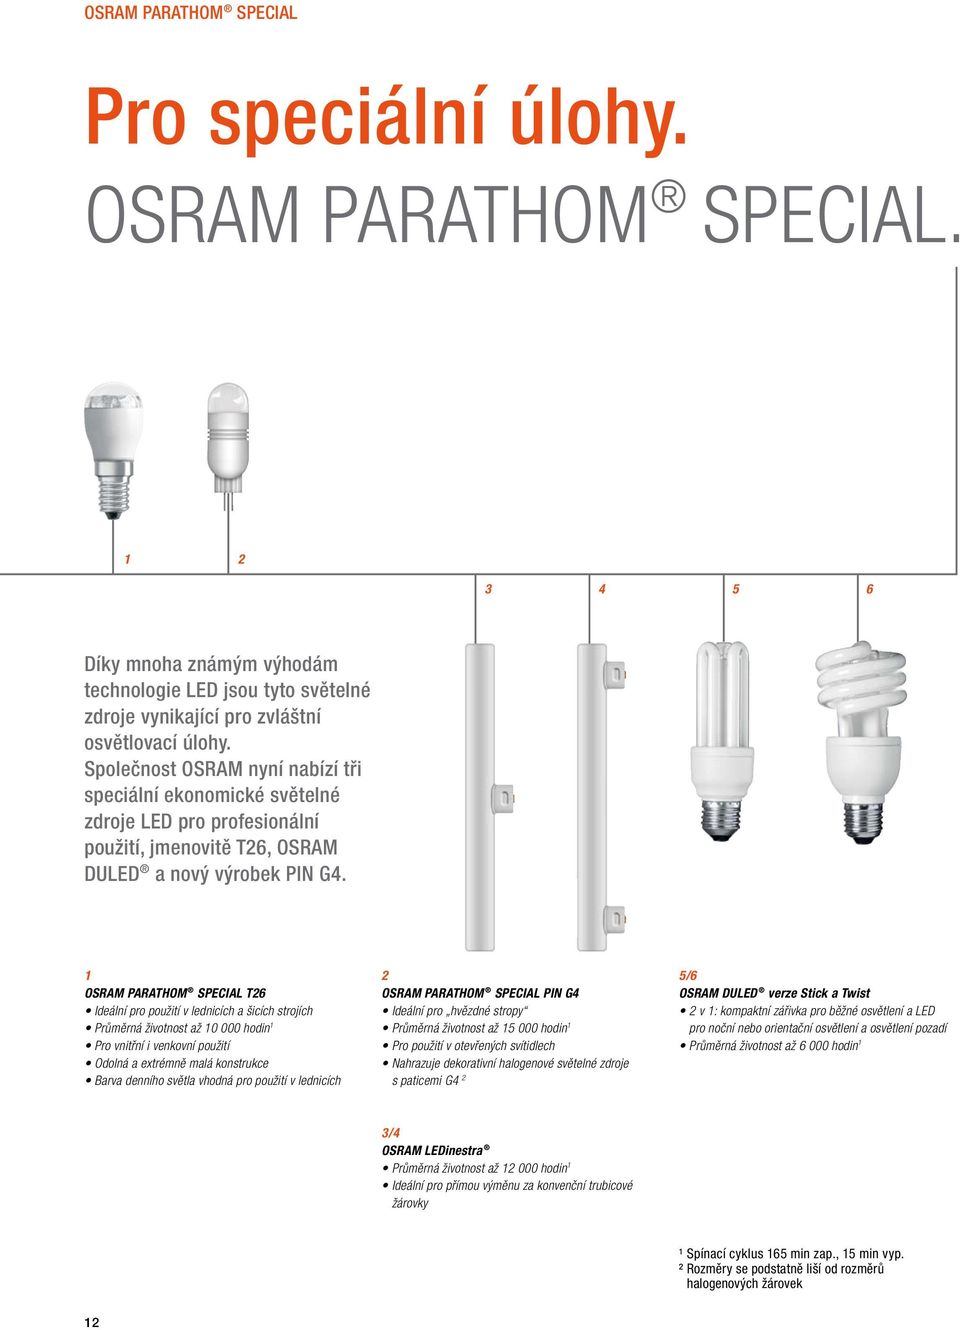 1 OSRAM PARATHOM SPECIAL T26 Ideální pro použití v lednicích a šicích strojích Průměrná životnost až 10 000 hodin 1 Pro vnitřní i venkovní použití Odolná a extrémně malá konstrukce Barva denního